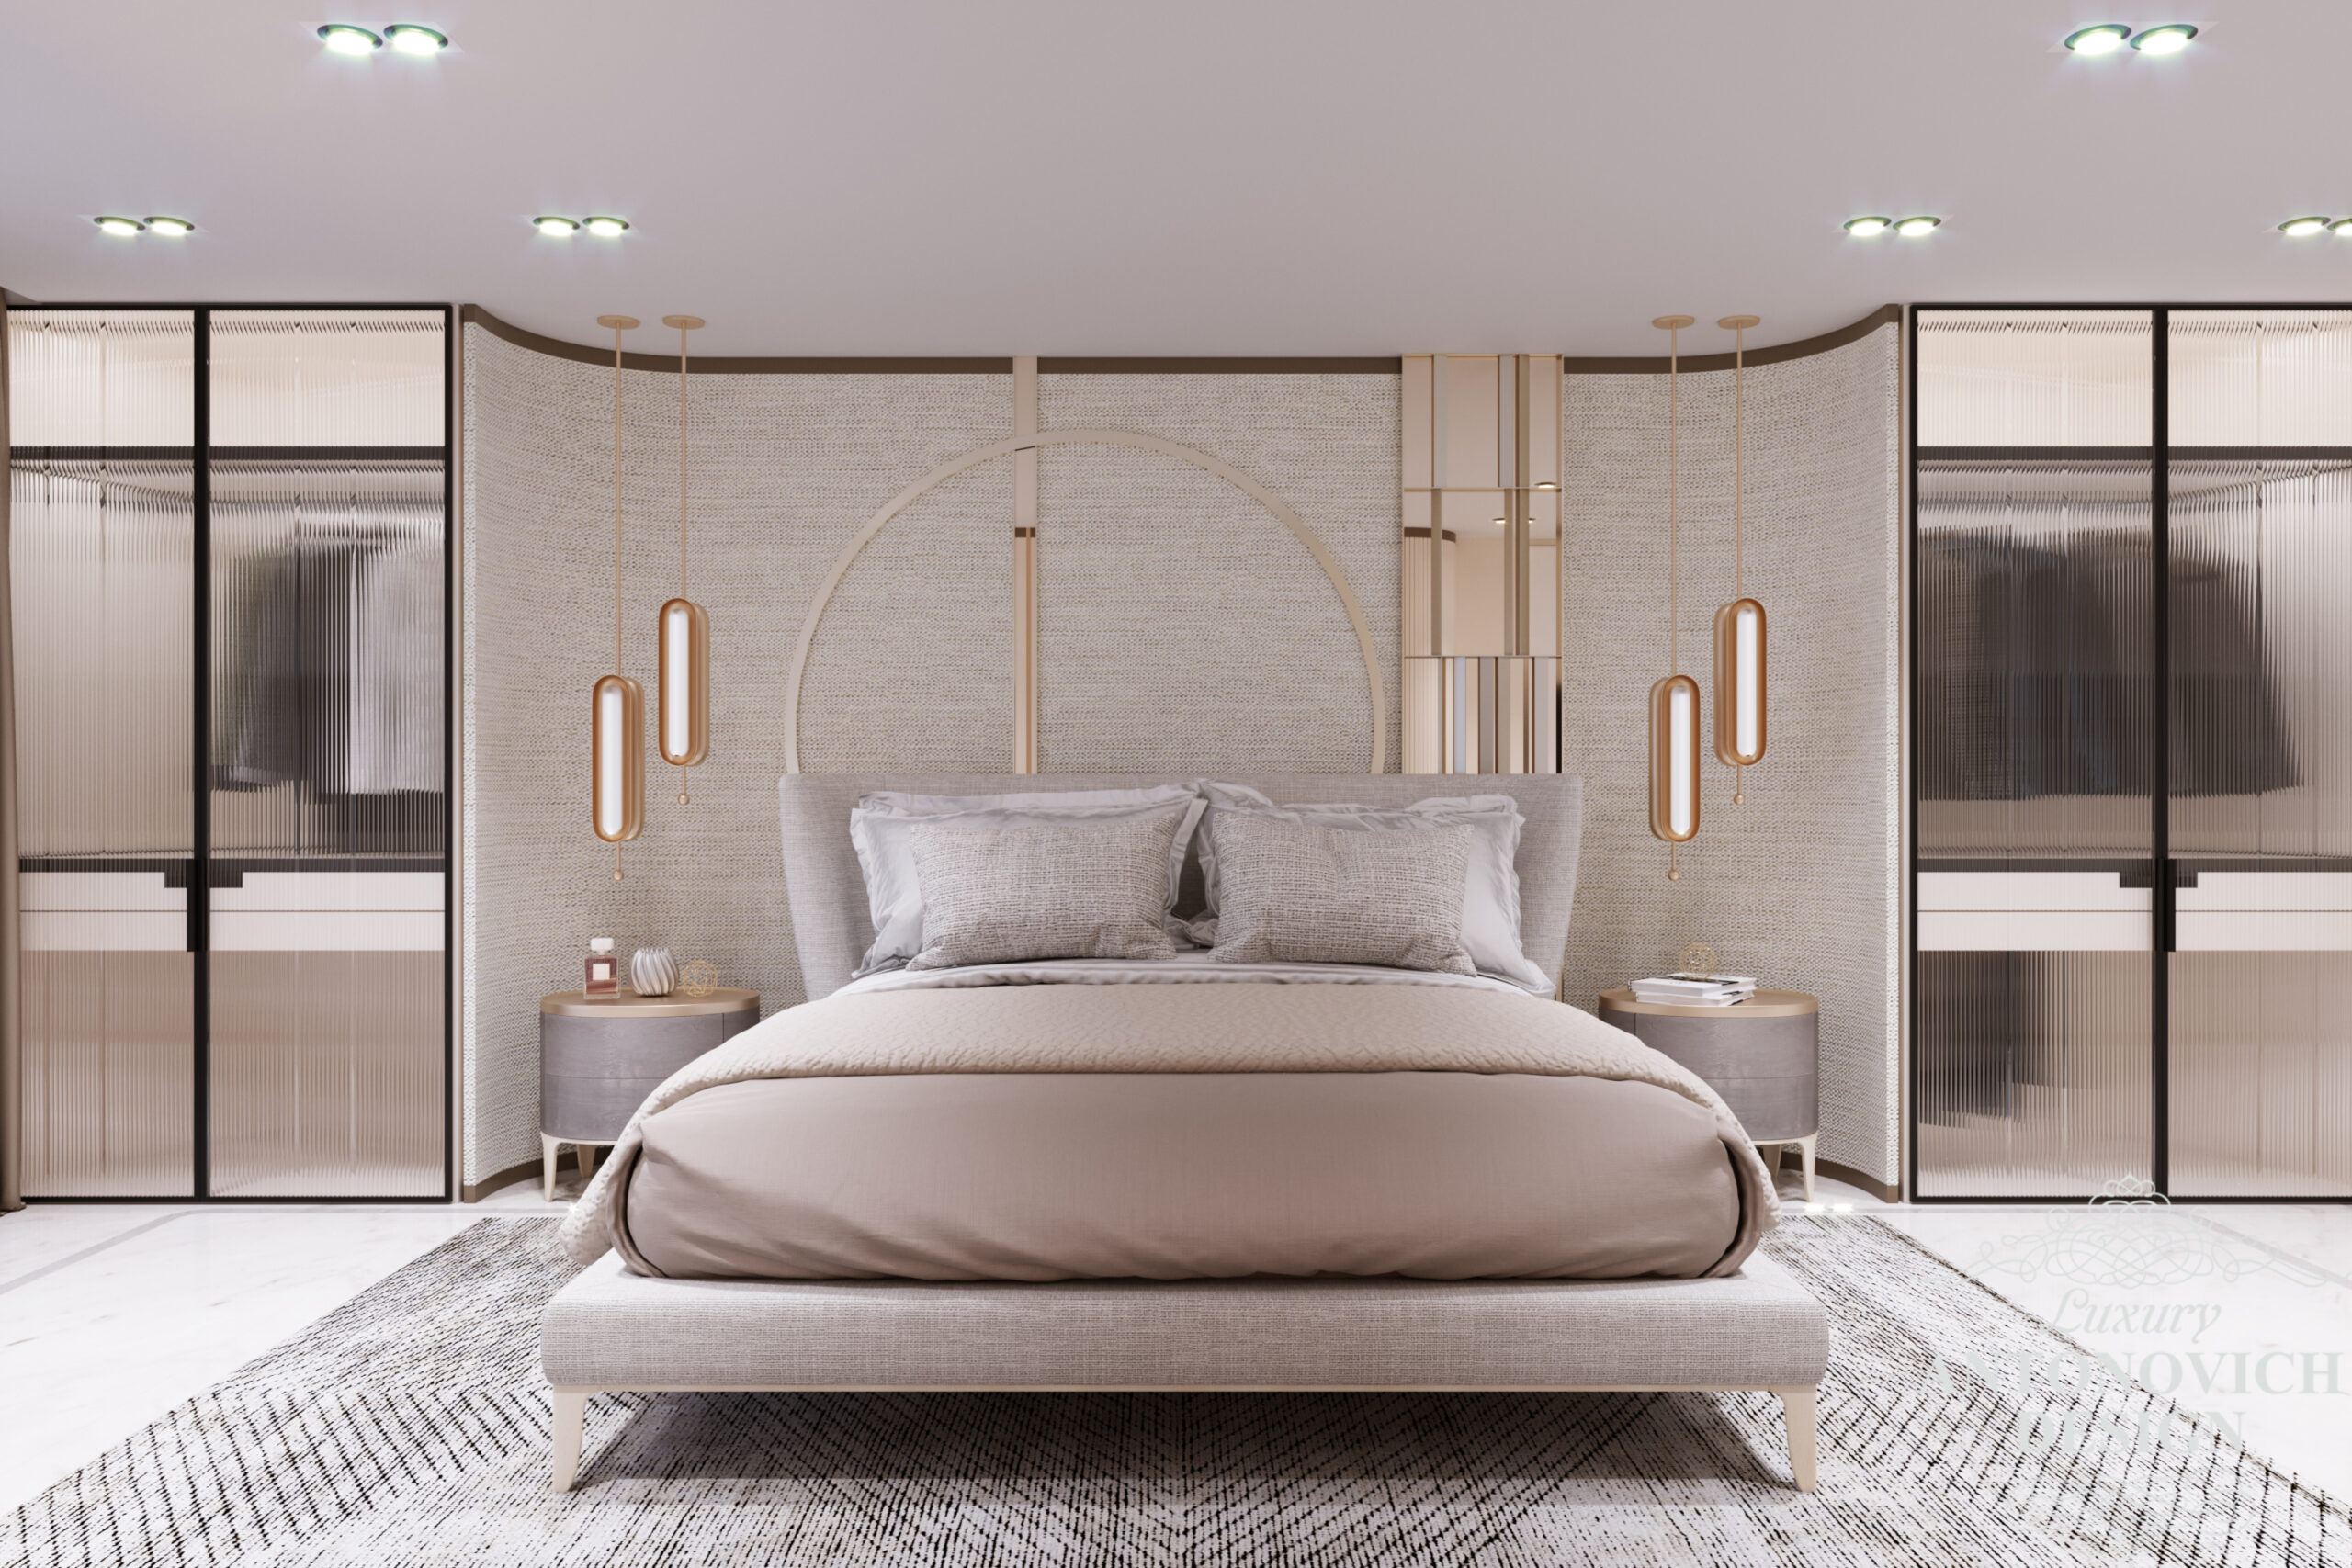 Стильный дизайн спальни с отделкой из натуральных материалов Тканевая отделка стен и трендовые светильники в интерьере спальни в дизайне таунхауса